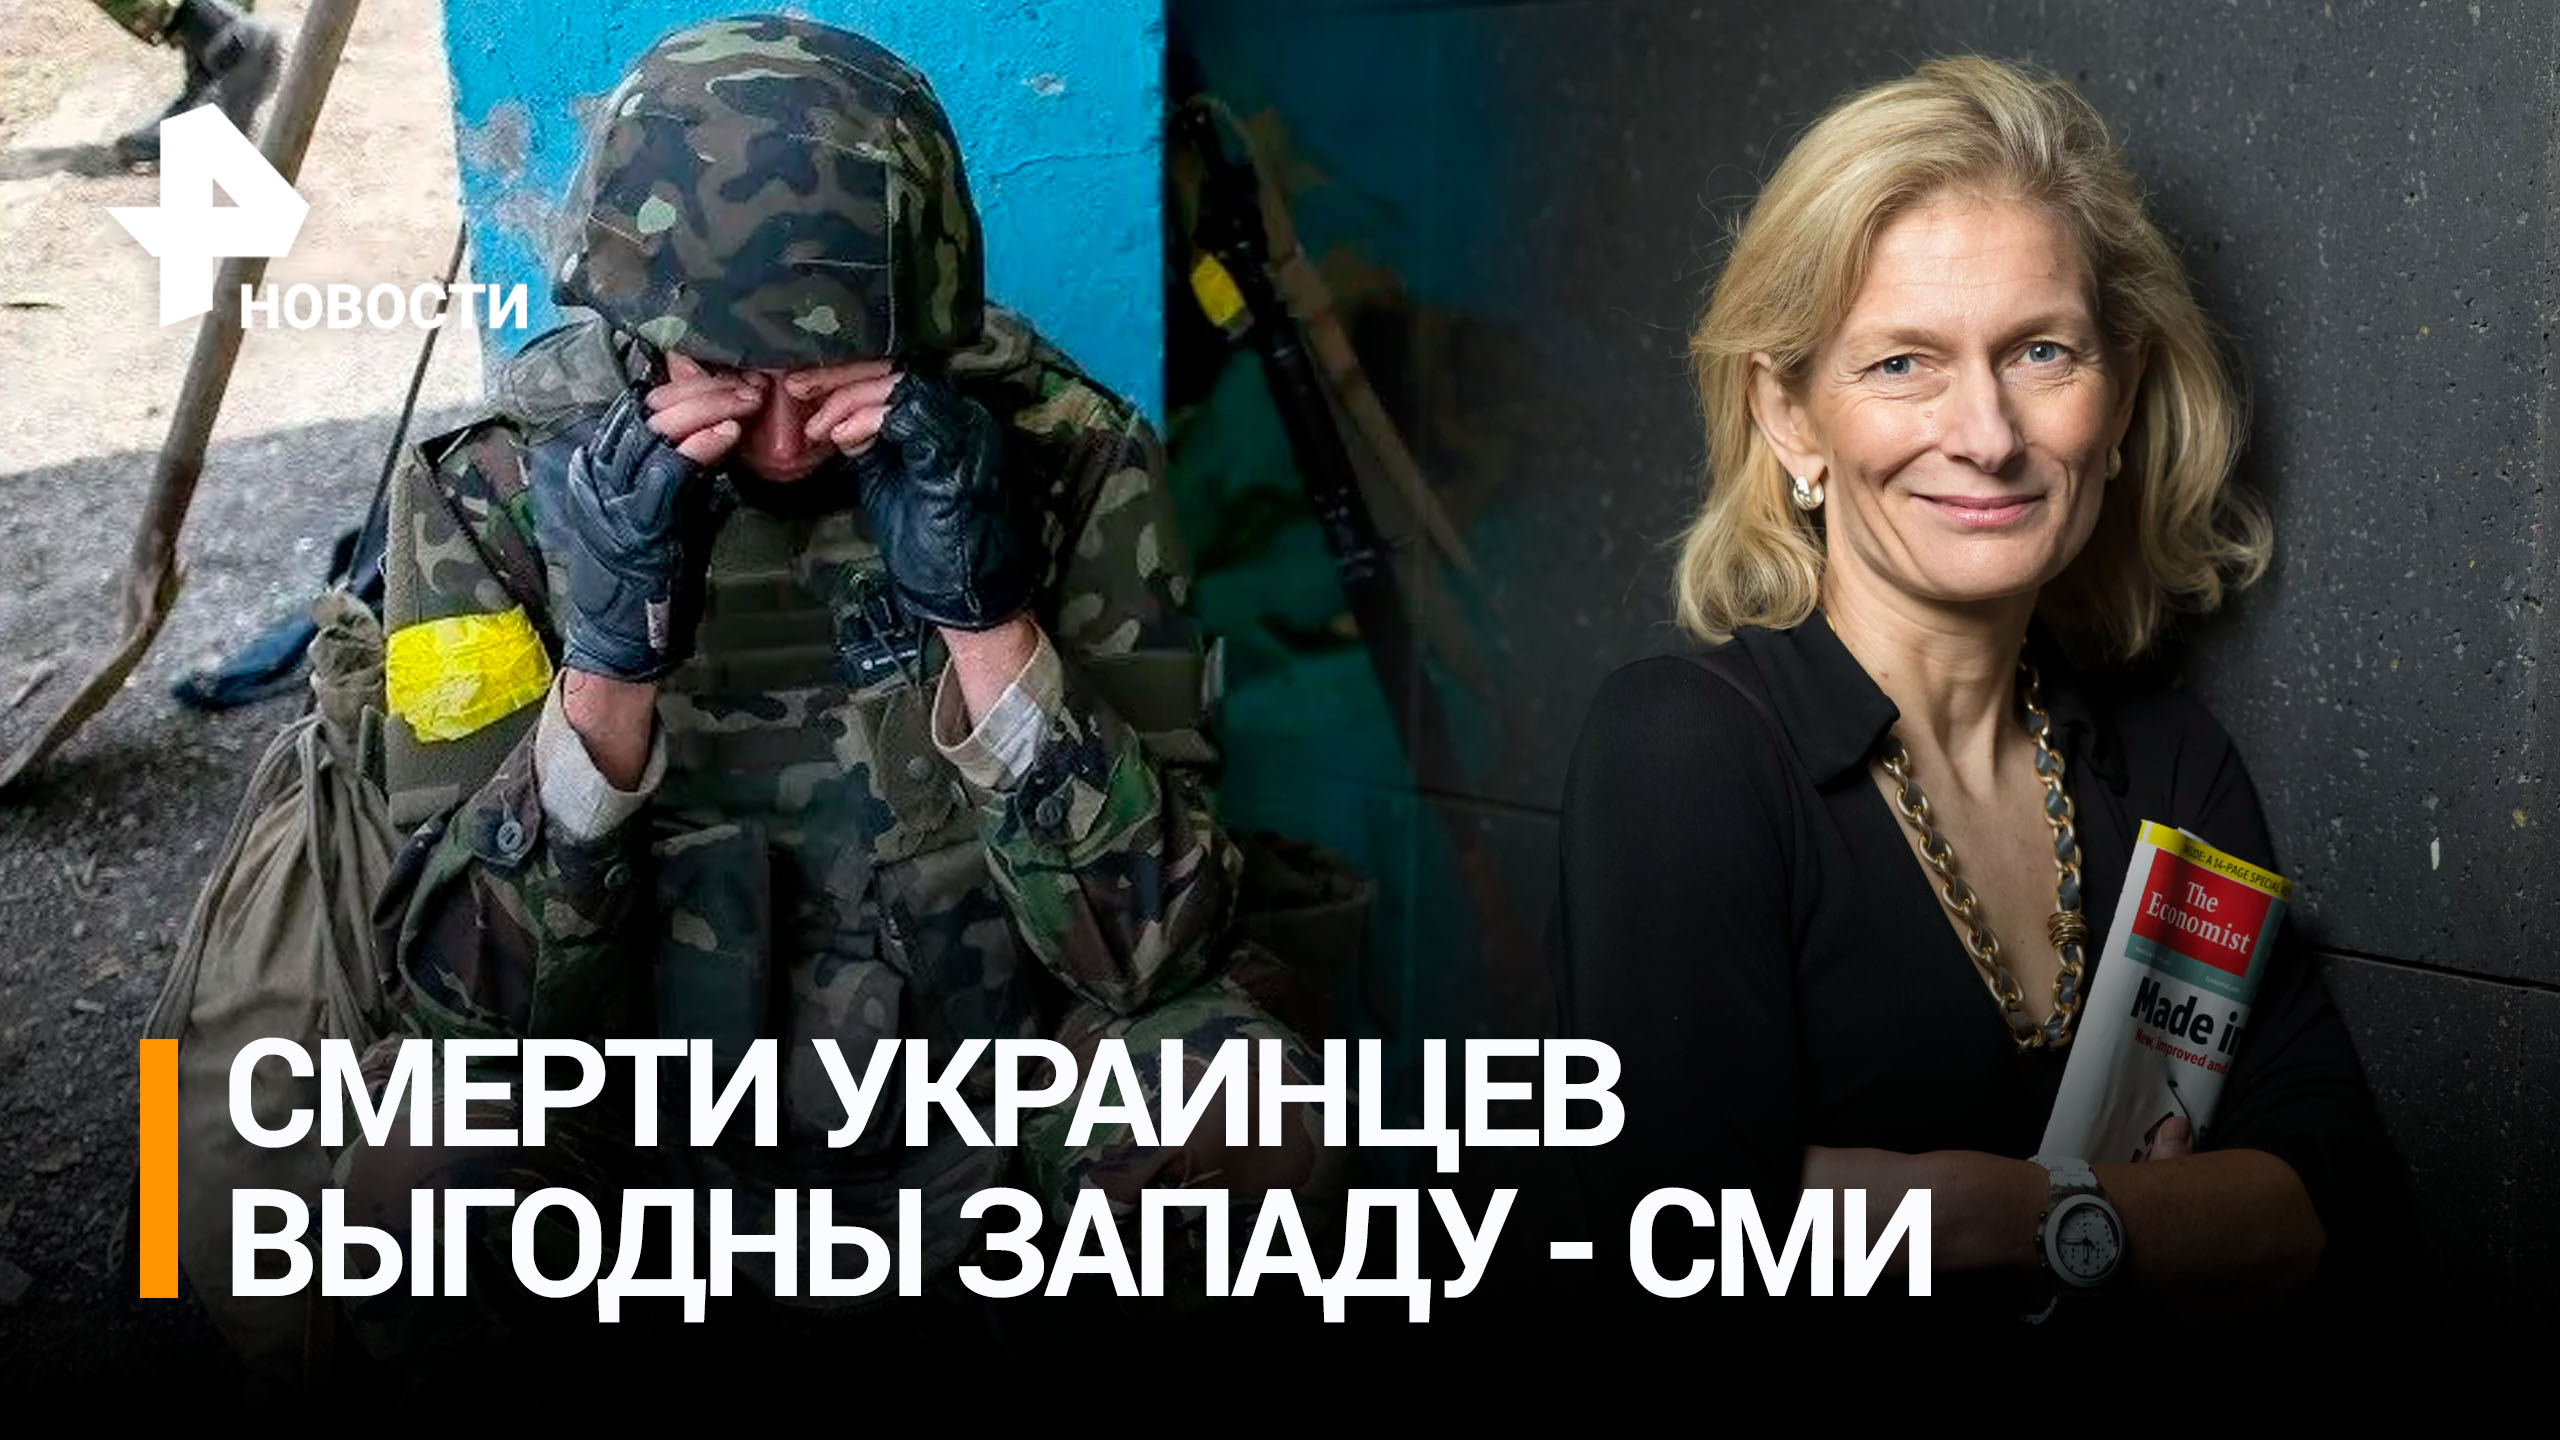 Почему смерти украинцев выгодны Западу, объяснили в западных СМИ / РЕН Новости